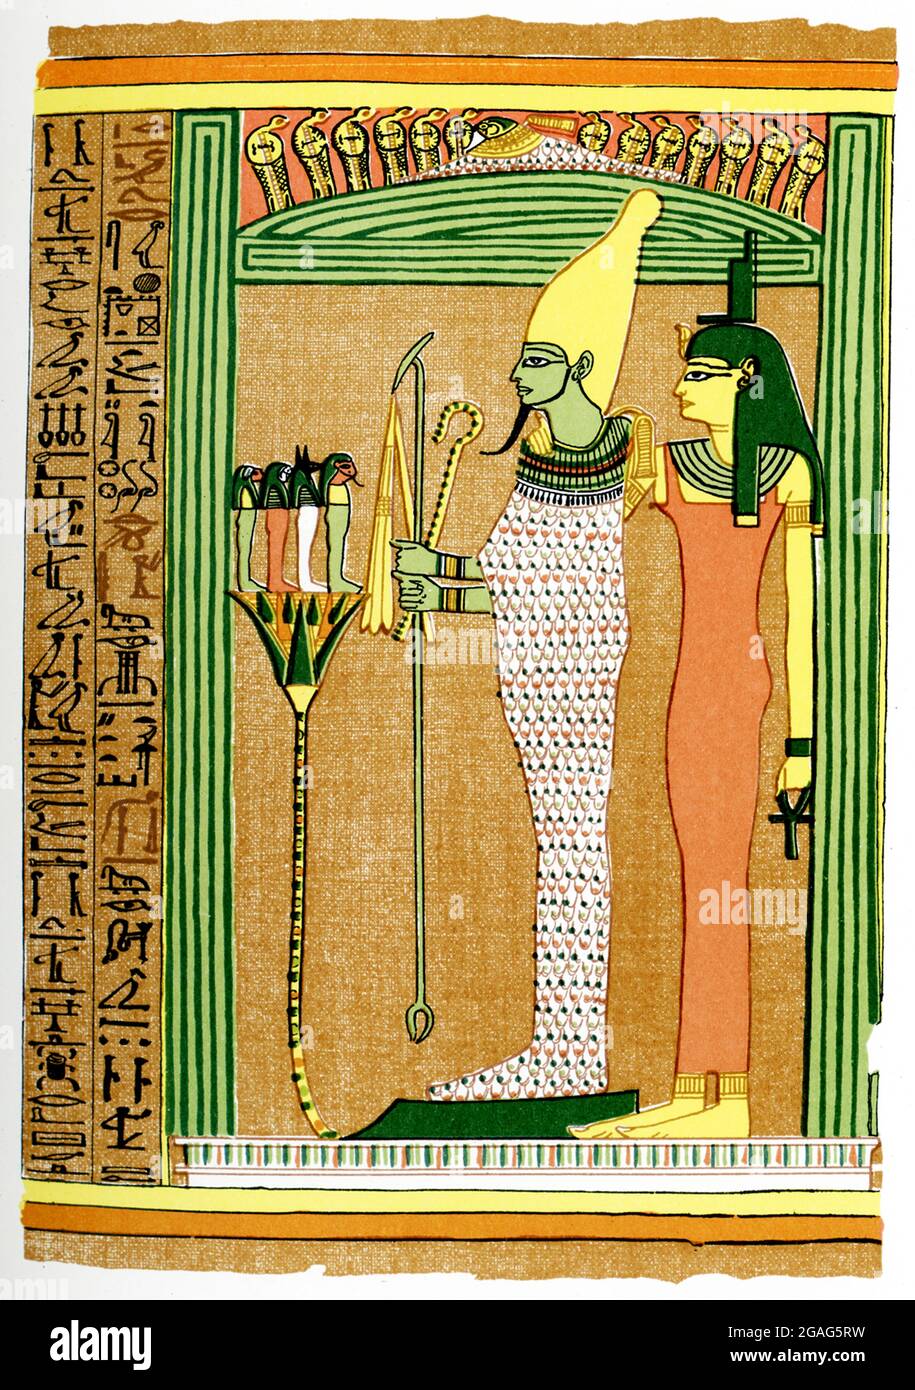 Die Bildunterschrift auf diesem Bild von 1903 lautet: „Osiris und Isis und vier Kinder des Horus“. Es erschien im Buch History of Egypt des französischen Ägyptologen Gaston Maspero. Hier trägt Ossiris, der ägyptische gott der Fruchtbarkeit und der Toten, die weiße Krone von Oberägypten und das menat (Amulett gewichtet, um schwere Kragen auszugleichen). Er hält in seinen Händen das Zepter, den Gauner und den Flint – alles königliche Symbole. Hinter ihm steht seine Frau Isis, die Göttin der Mutter. Vor ihm liegen die vier Kinder seines Sohnes Horus. Stockfoto